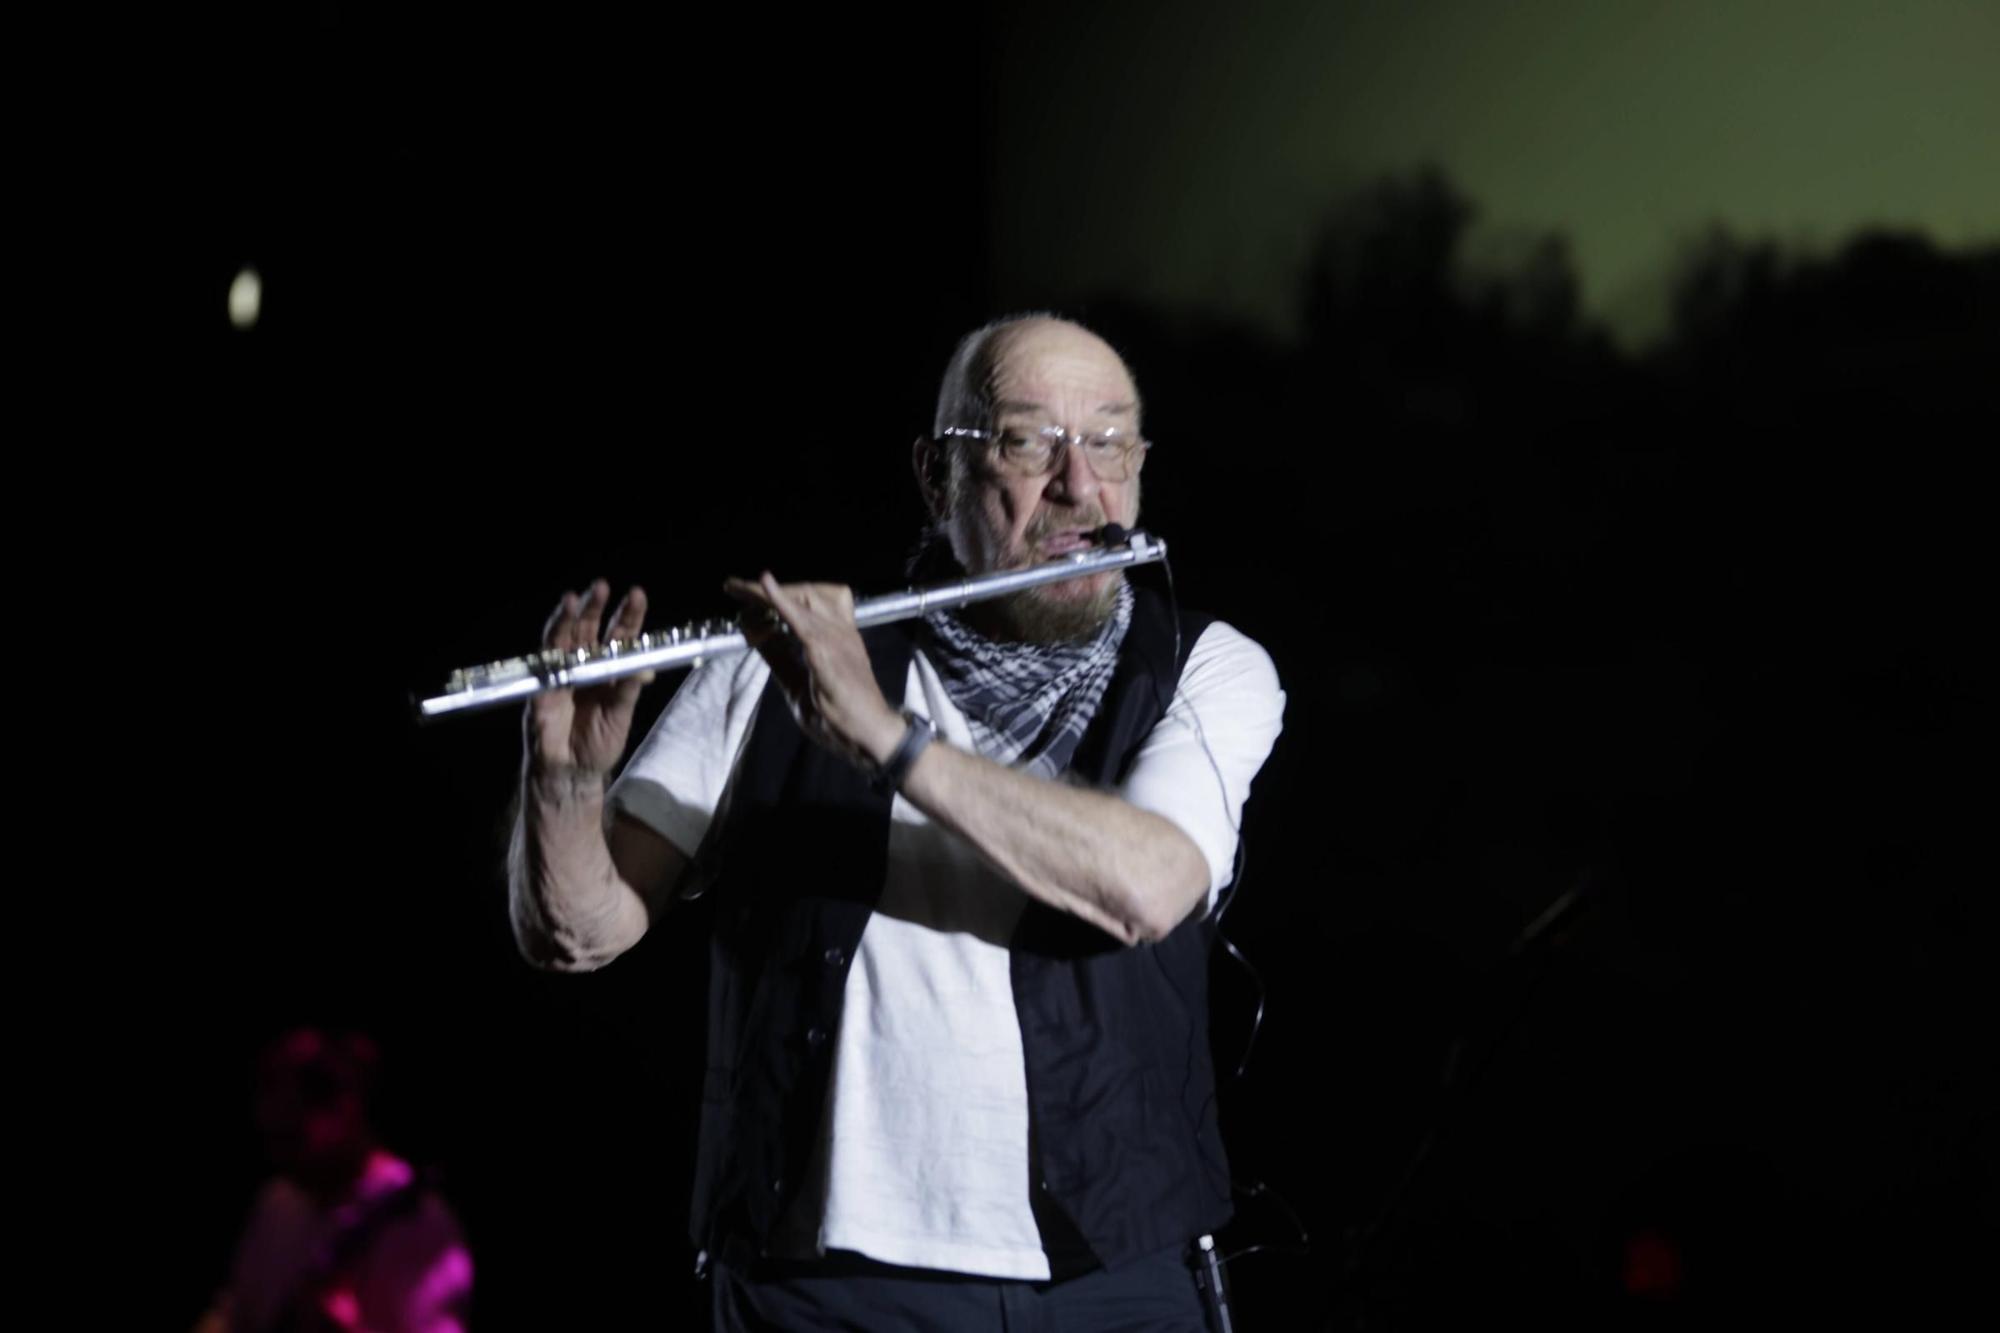 La banda británica Jethro Tull actúa en el Auditorium de Palma